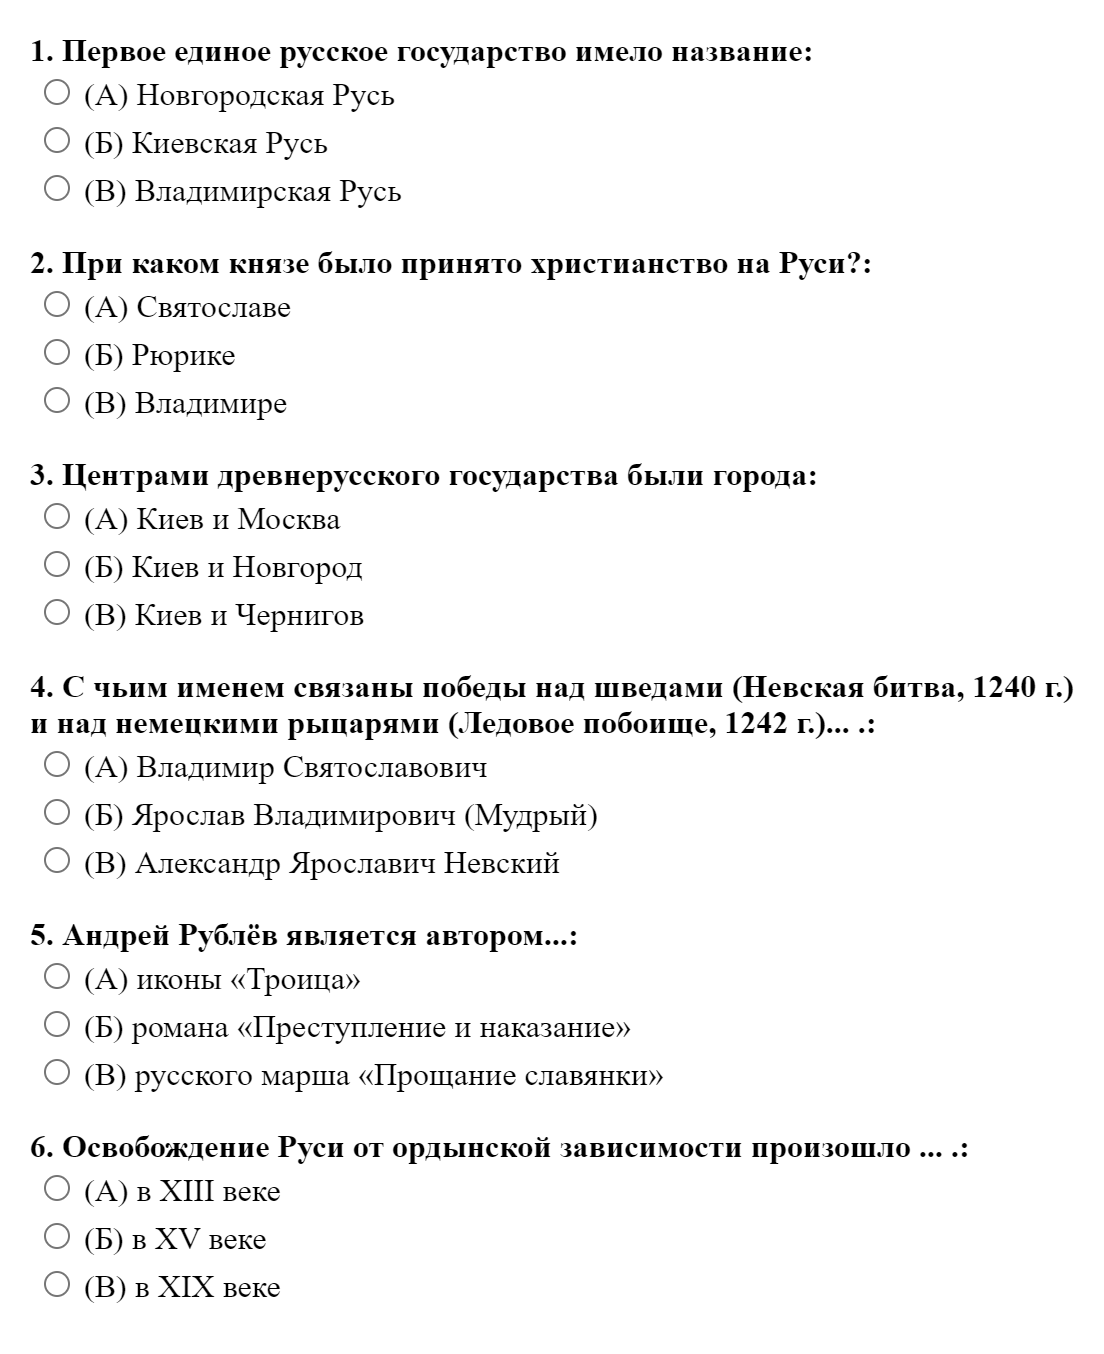 Пример теста для иностранцев по истории России